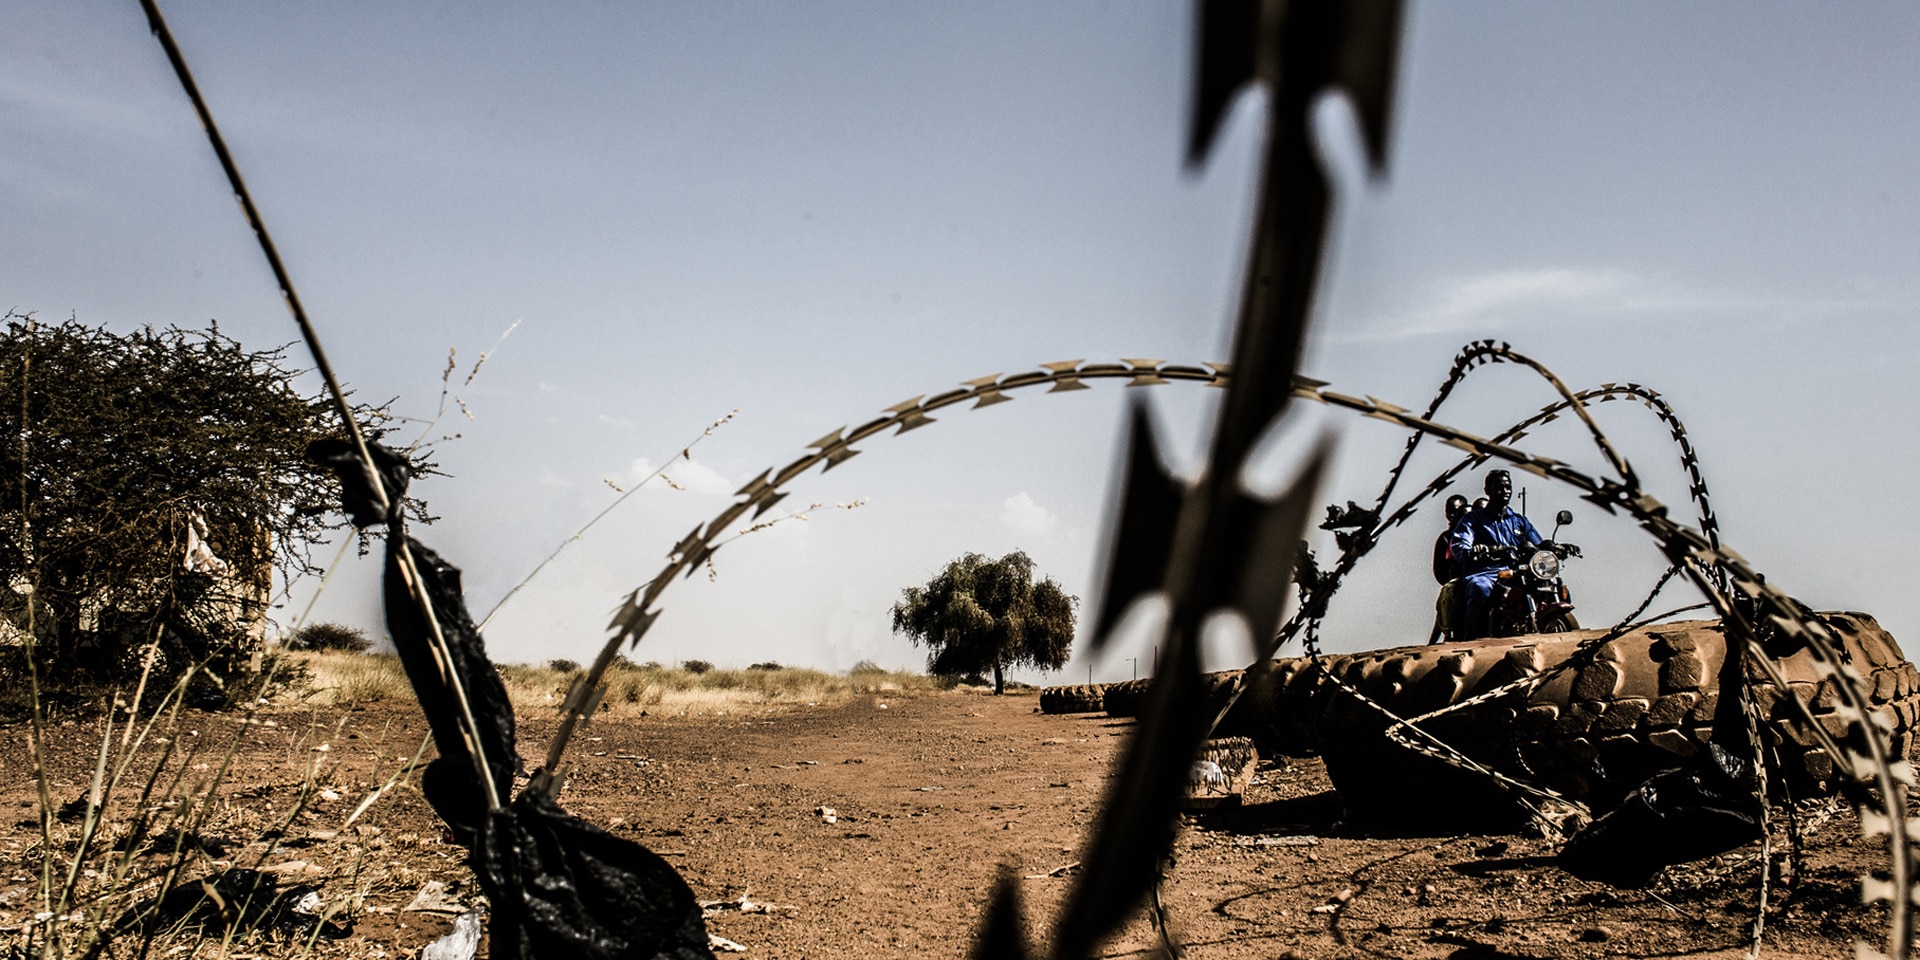 Un fil de fer barbelé et des pneus sur une route sablonneuse en Afrique. En arrière-plan, deux personnes à moto.